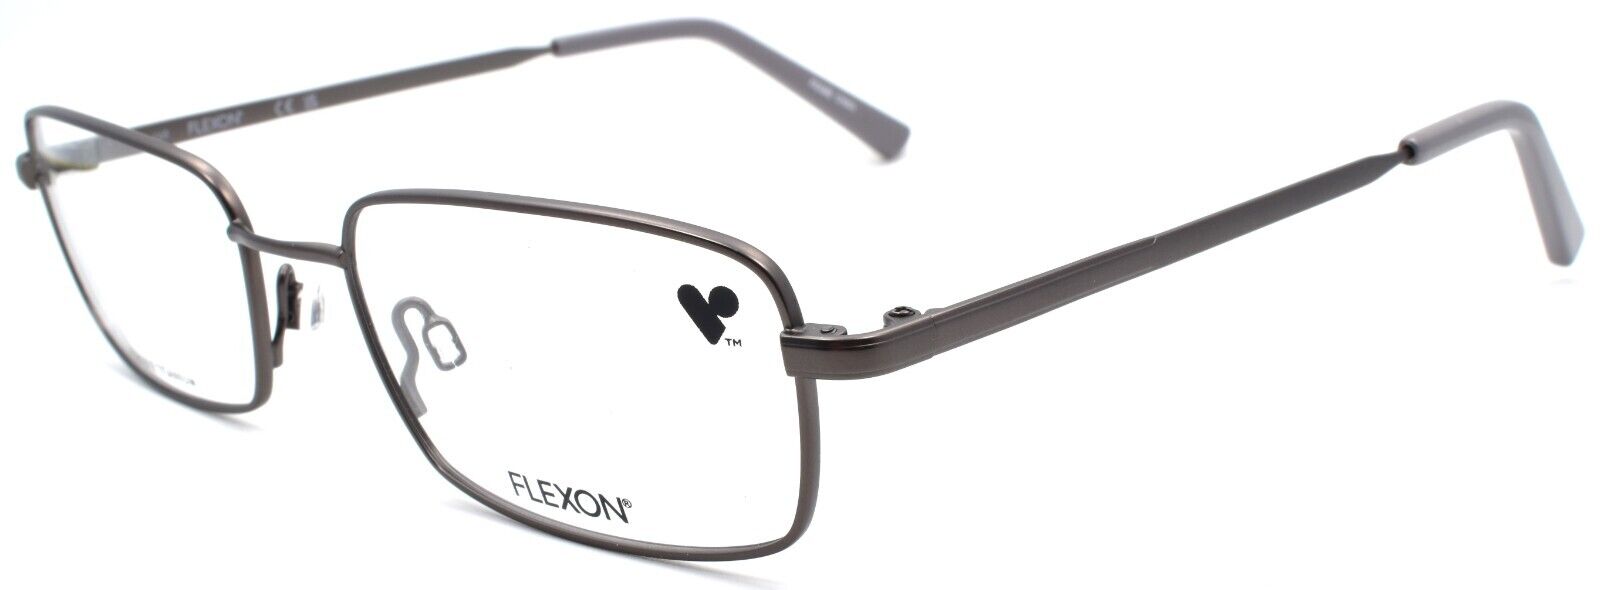 1-Flexon H6051 033 Men's Eyeglasses Frames 53-18-145 Gunmetal Flexible Titanium-886895485555-IKSpecs